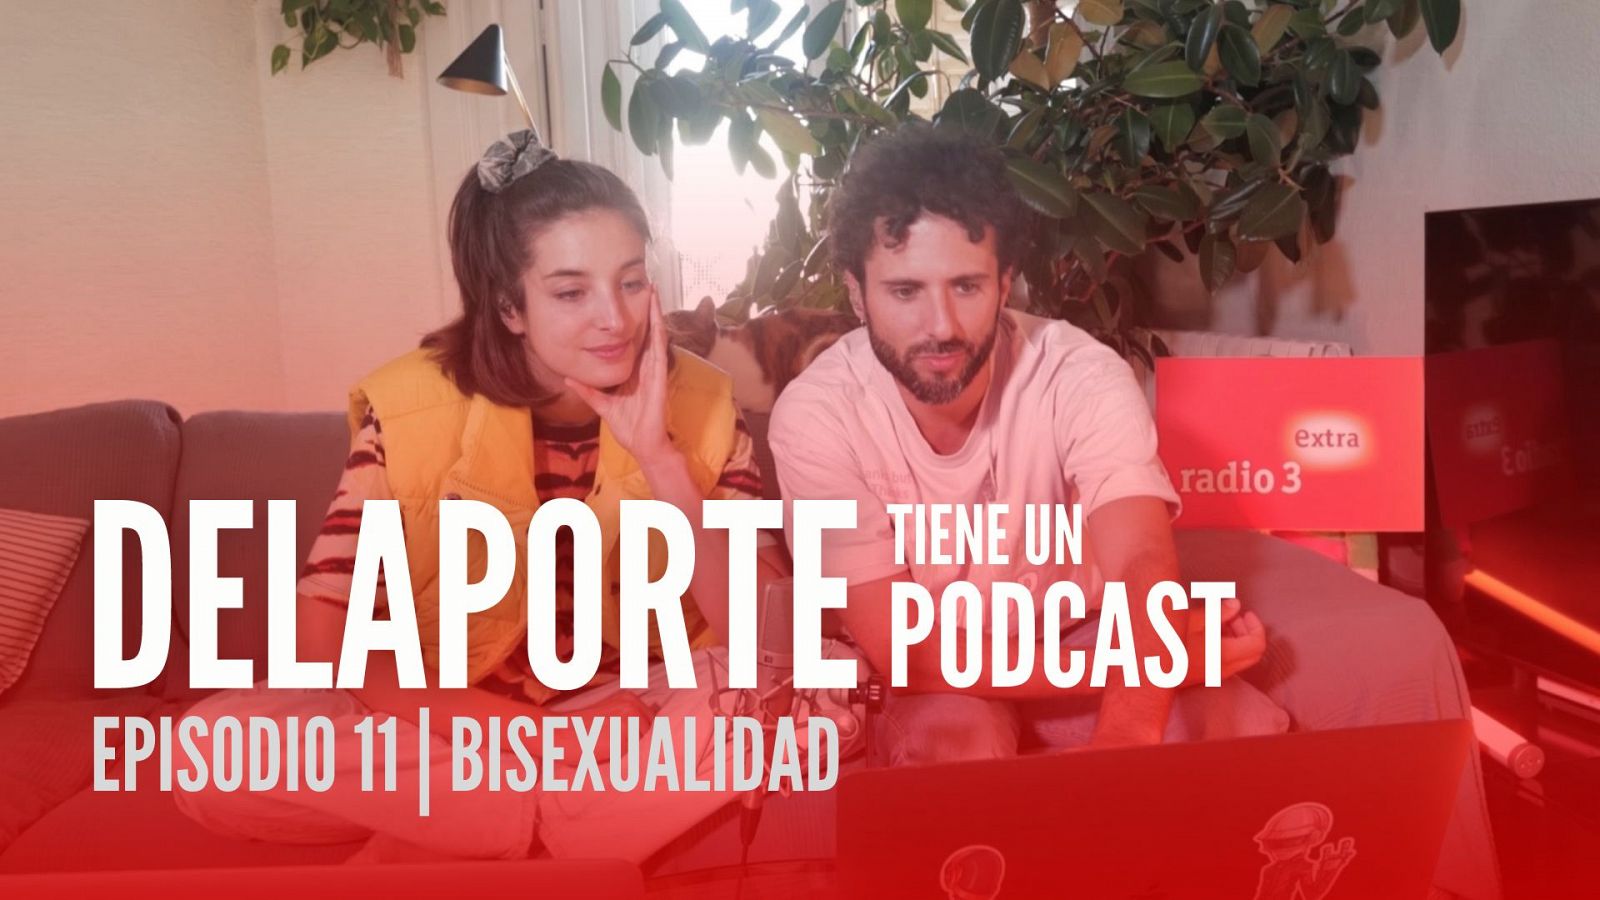 Delaporte tiene un podacast - Bisexualidad - 24/11/22 - ver ahora